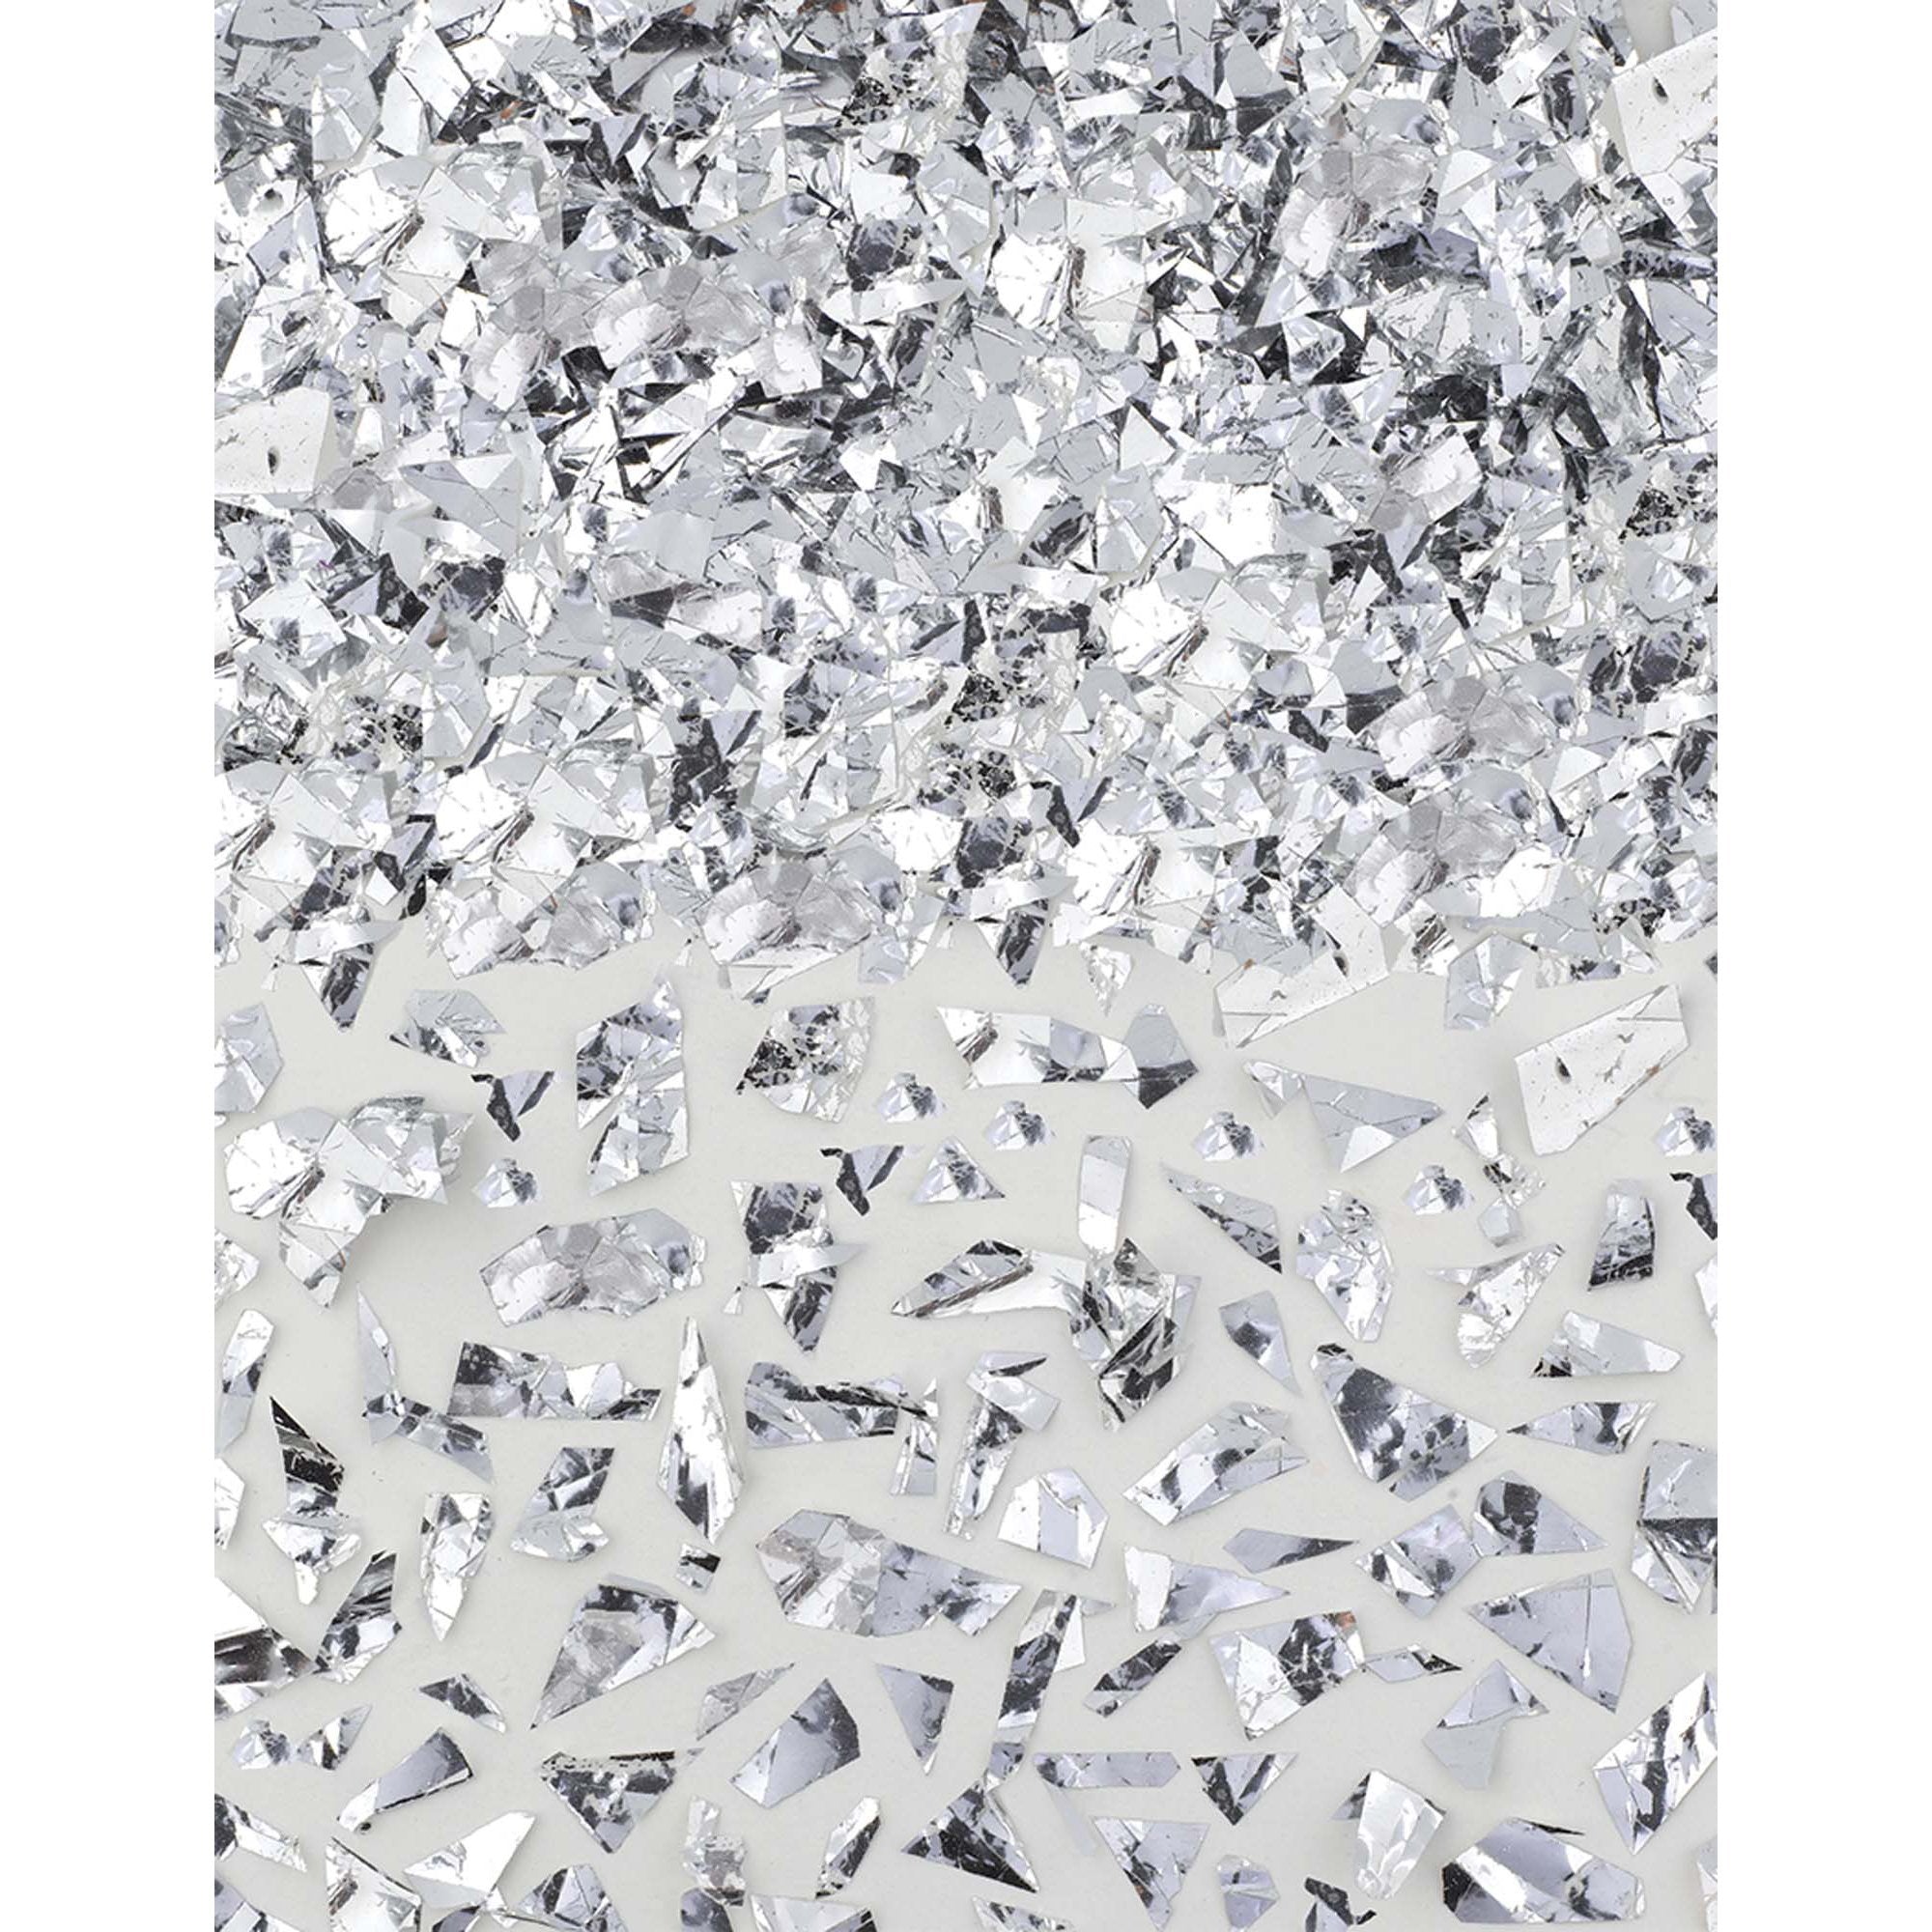 Silver Sparkle Foil Shred Confetti 1.5oz - Party Centre